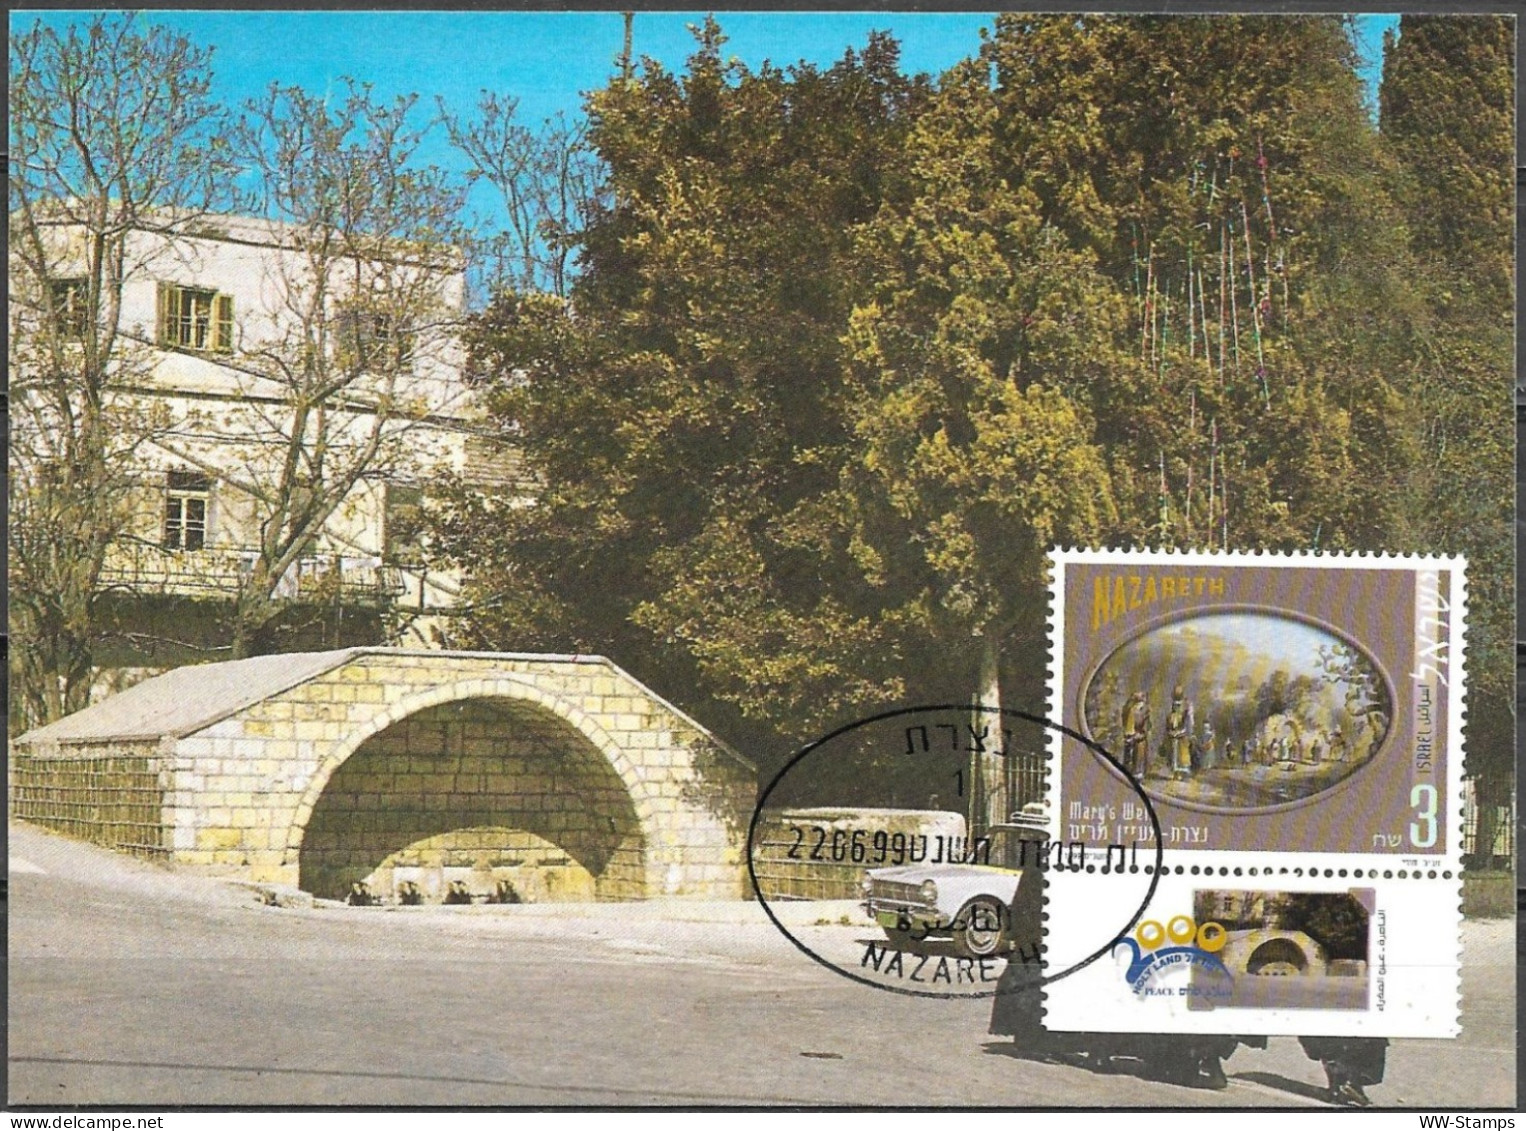 Israel 1999 Maximum Card Nazareth Mary's Well Pilgrimage To The Holy Land [ILT1646] - Cartes-maximum